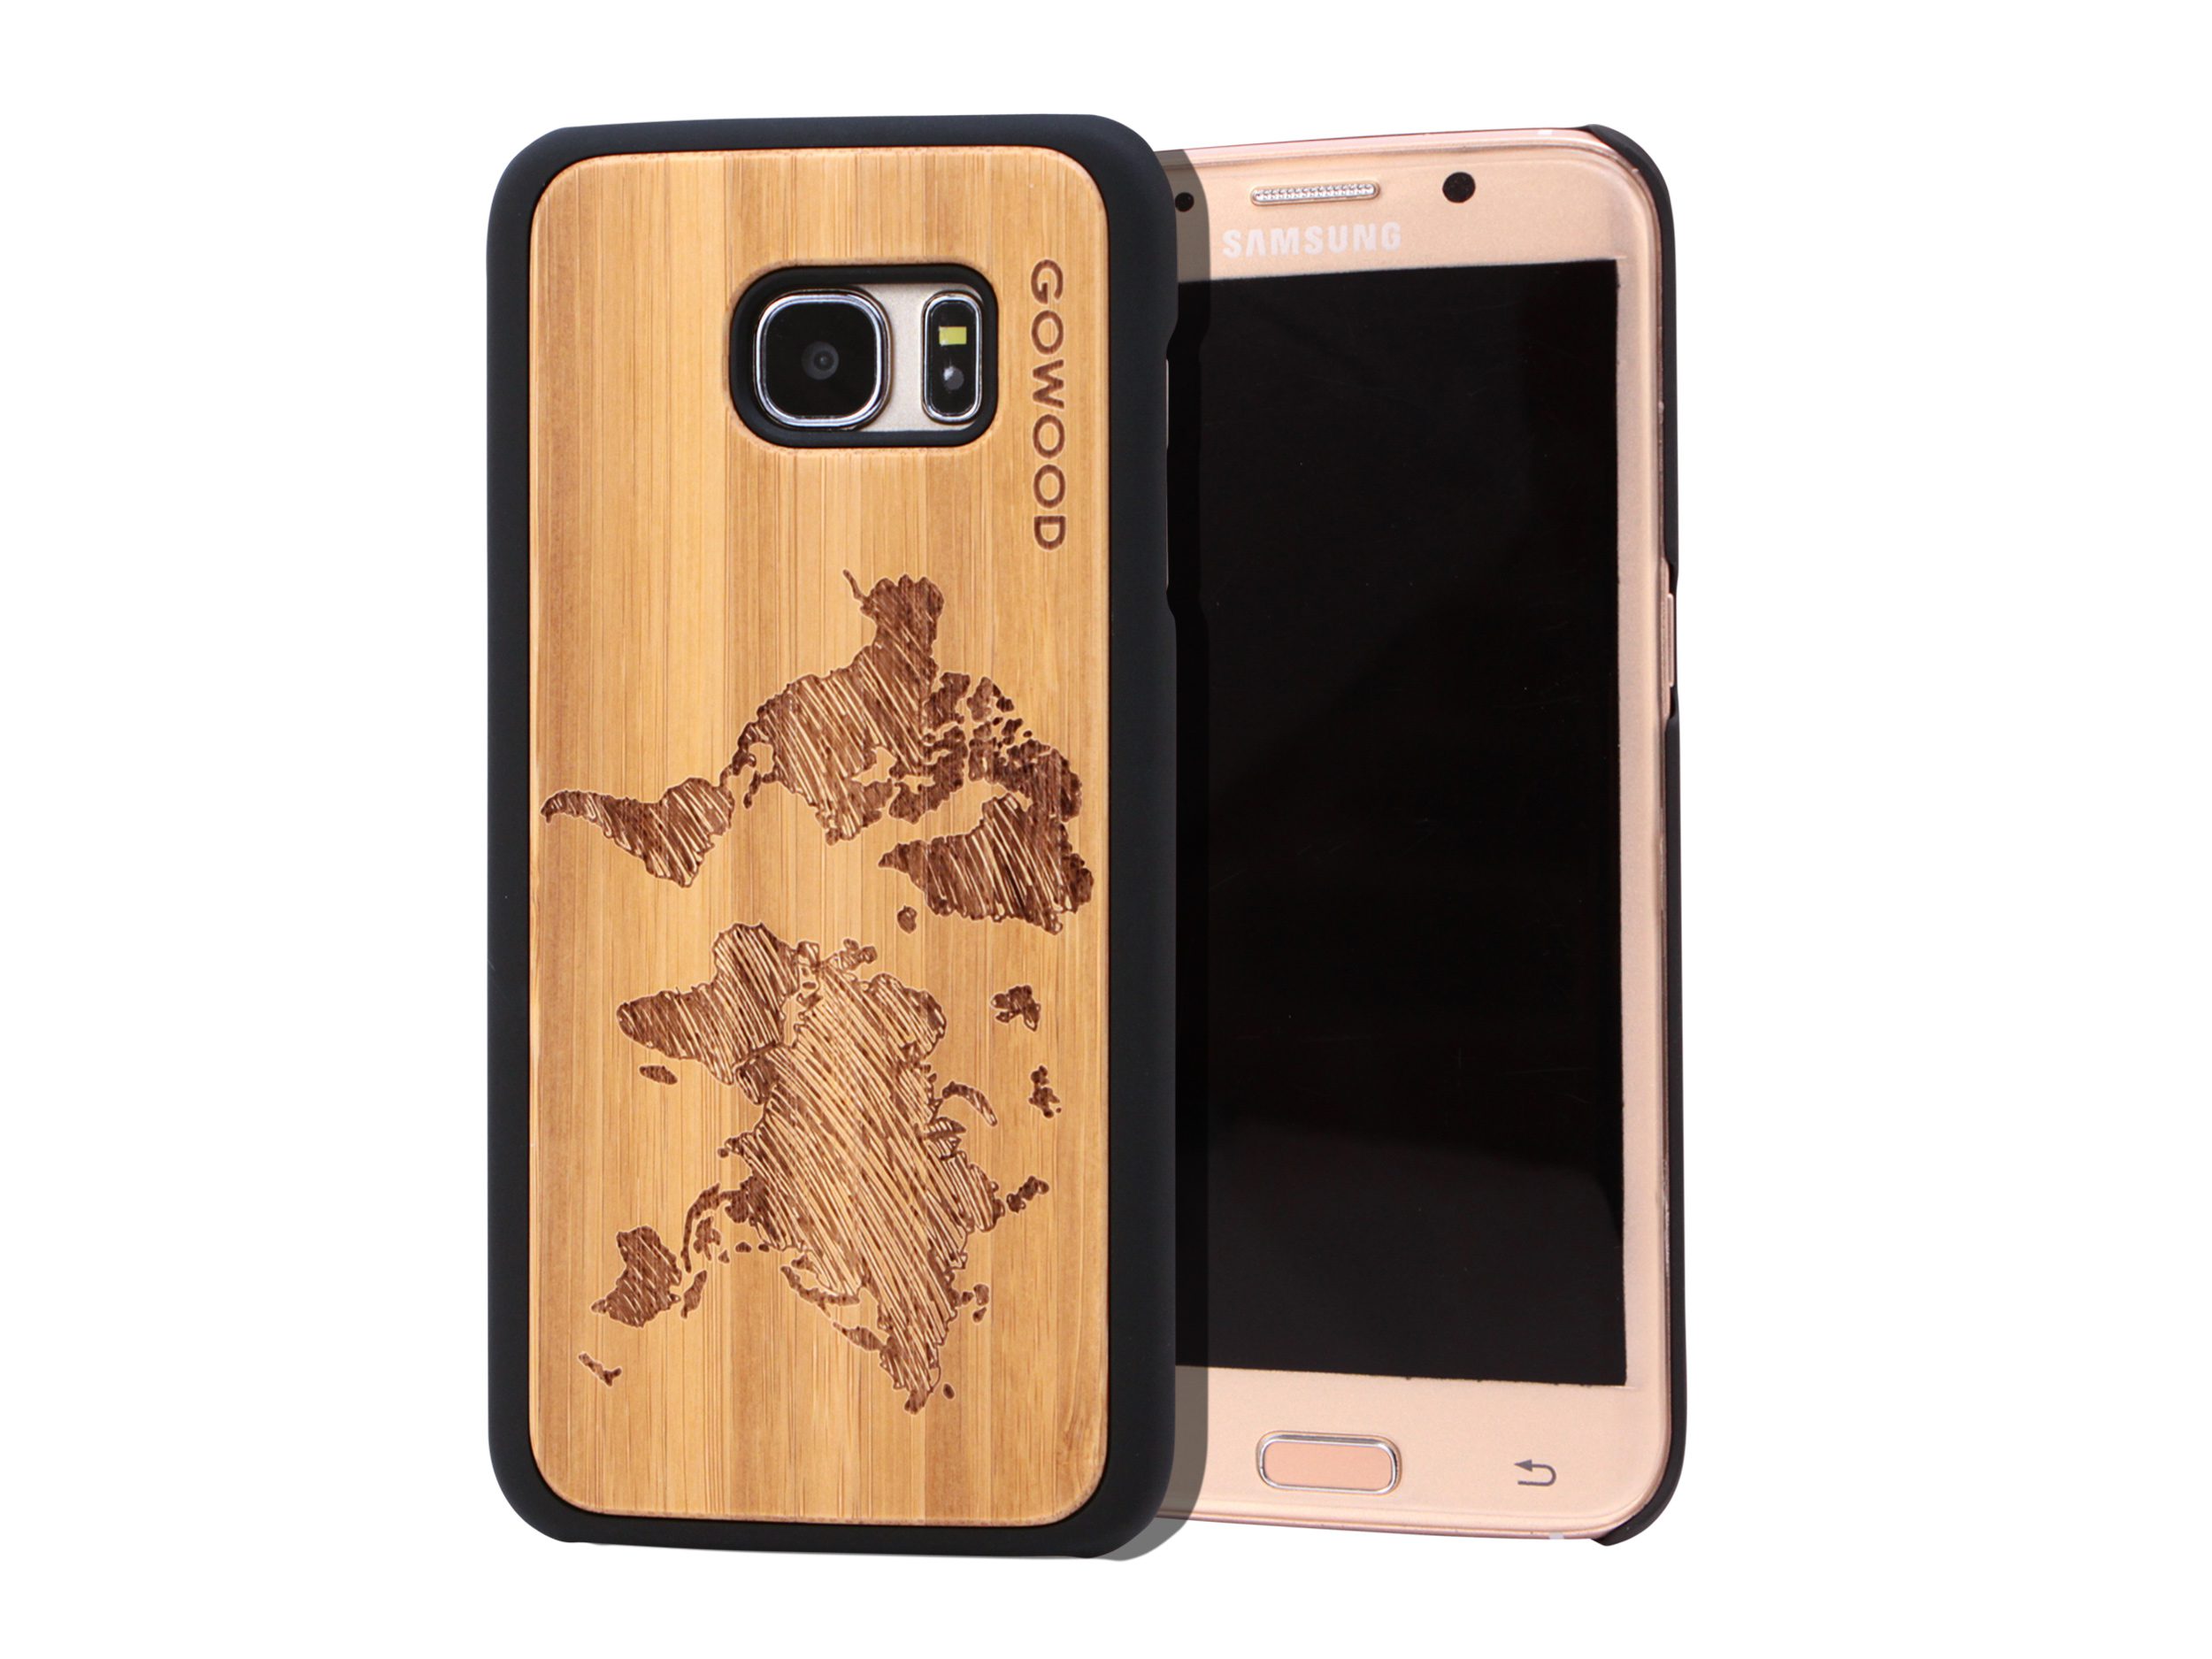 Samsung Galaxy S7 Edge wood case world map main